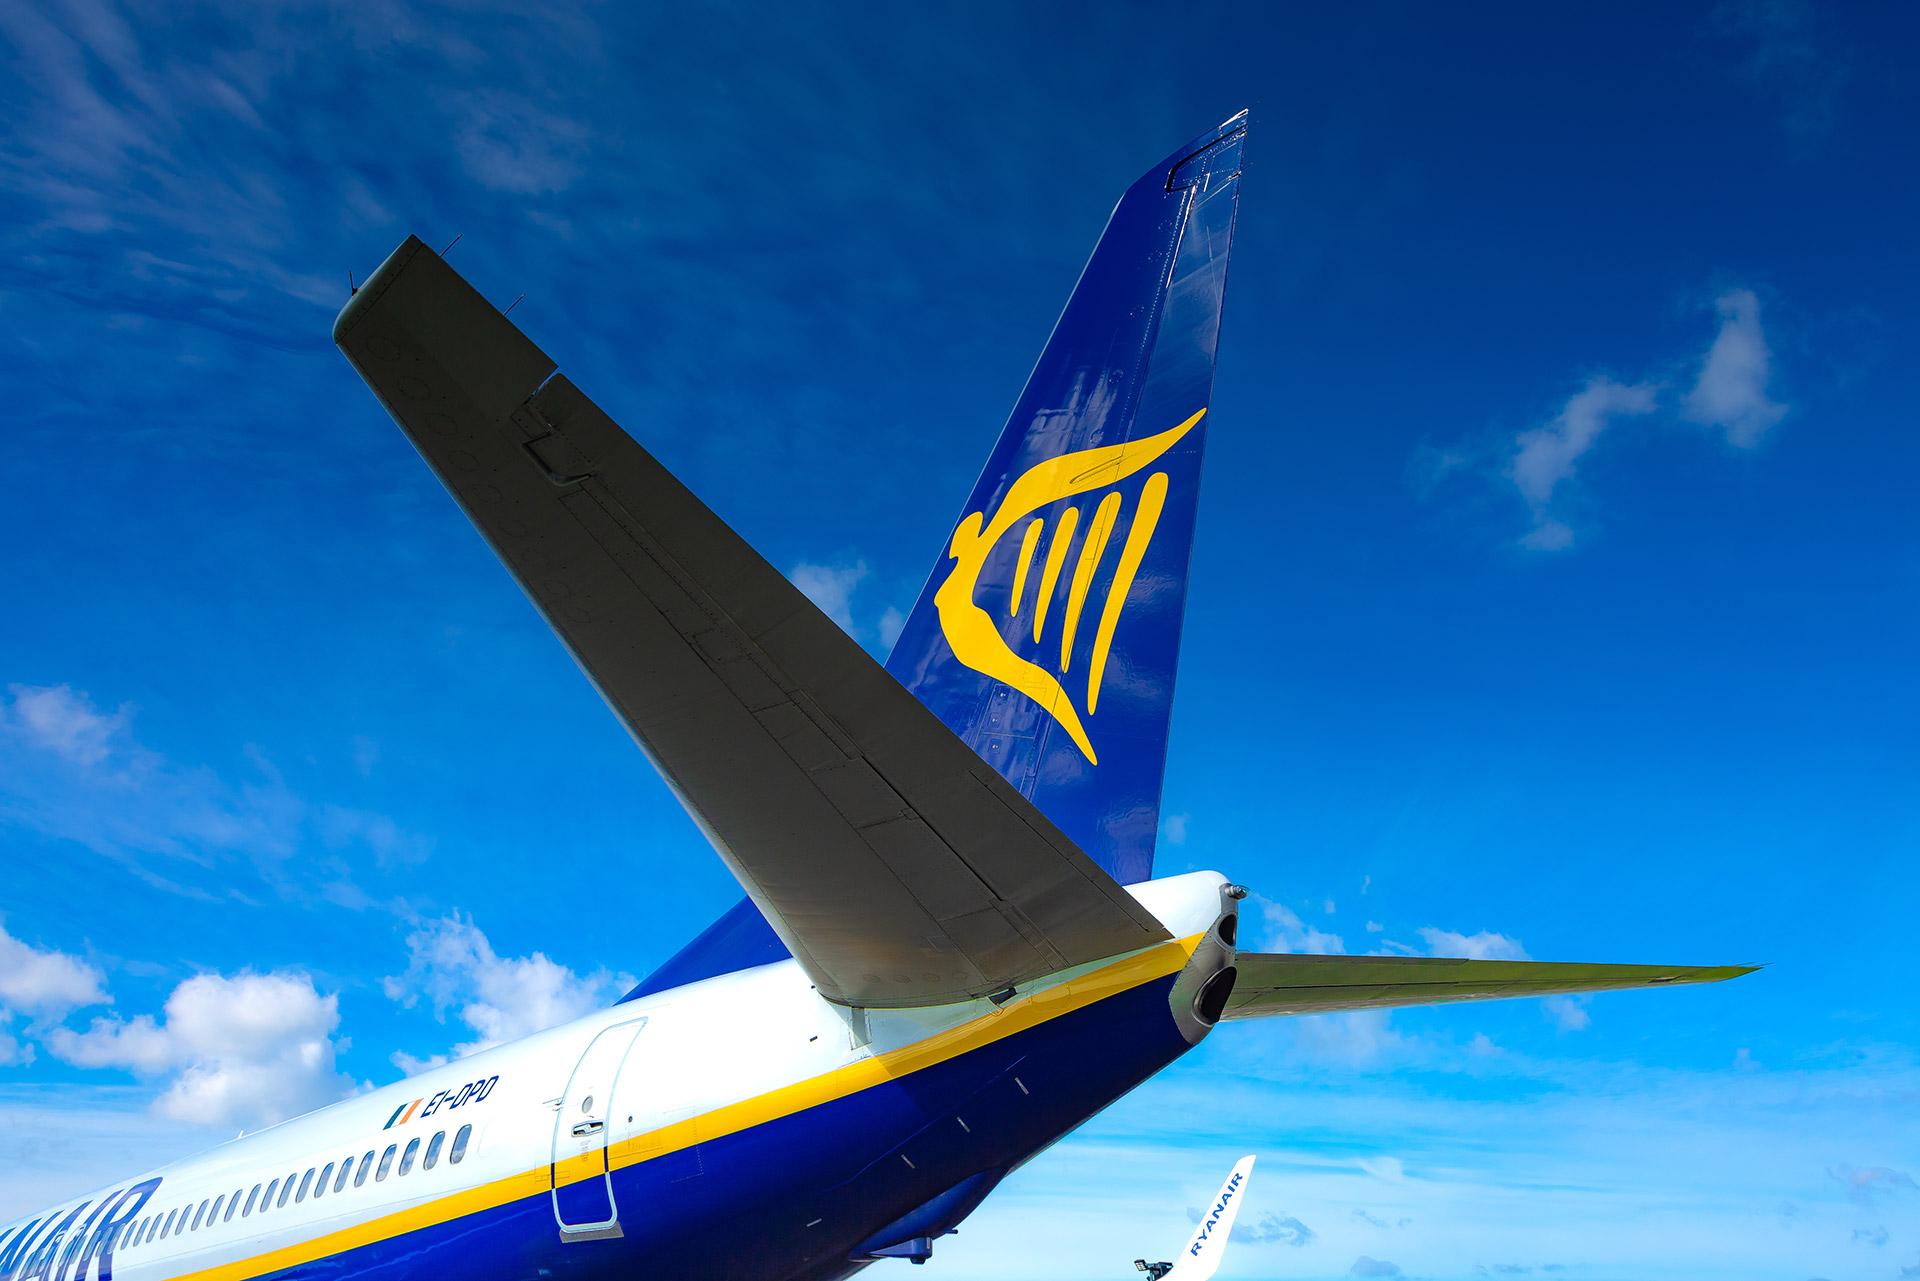 arm Gewend aan Installeren Airline In Focus: Ryanair | Aviation Week Network